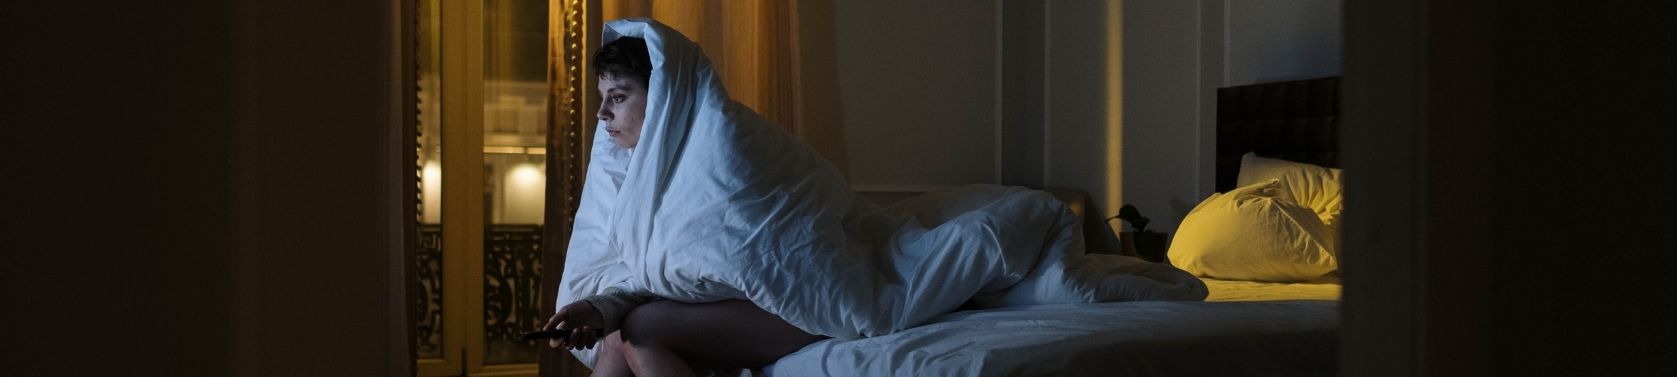 Warum Durchschlafstörungen so verbreitet sind - und wie du schläfst wie ein Baby